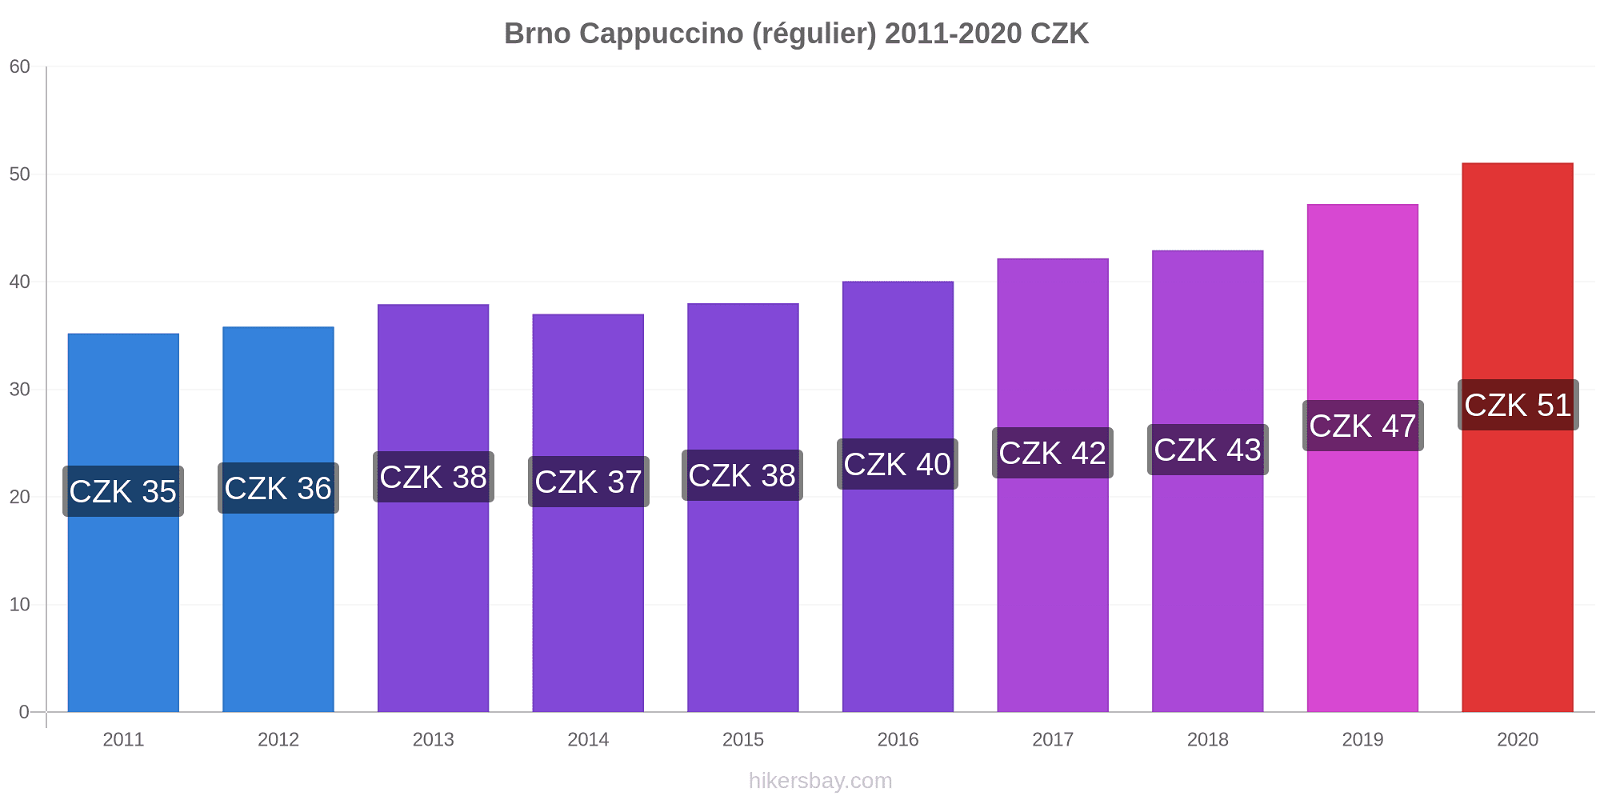 Brno changements de prix Cappuccino (régulier) hikersbay.com